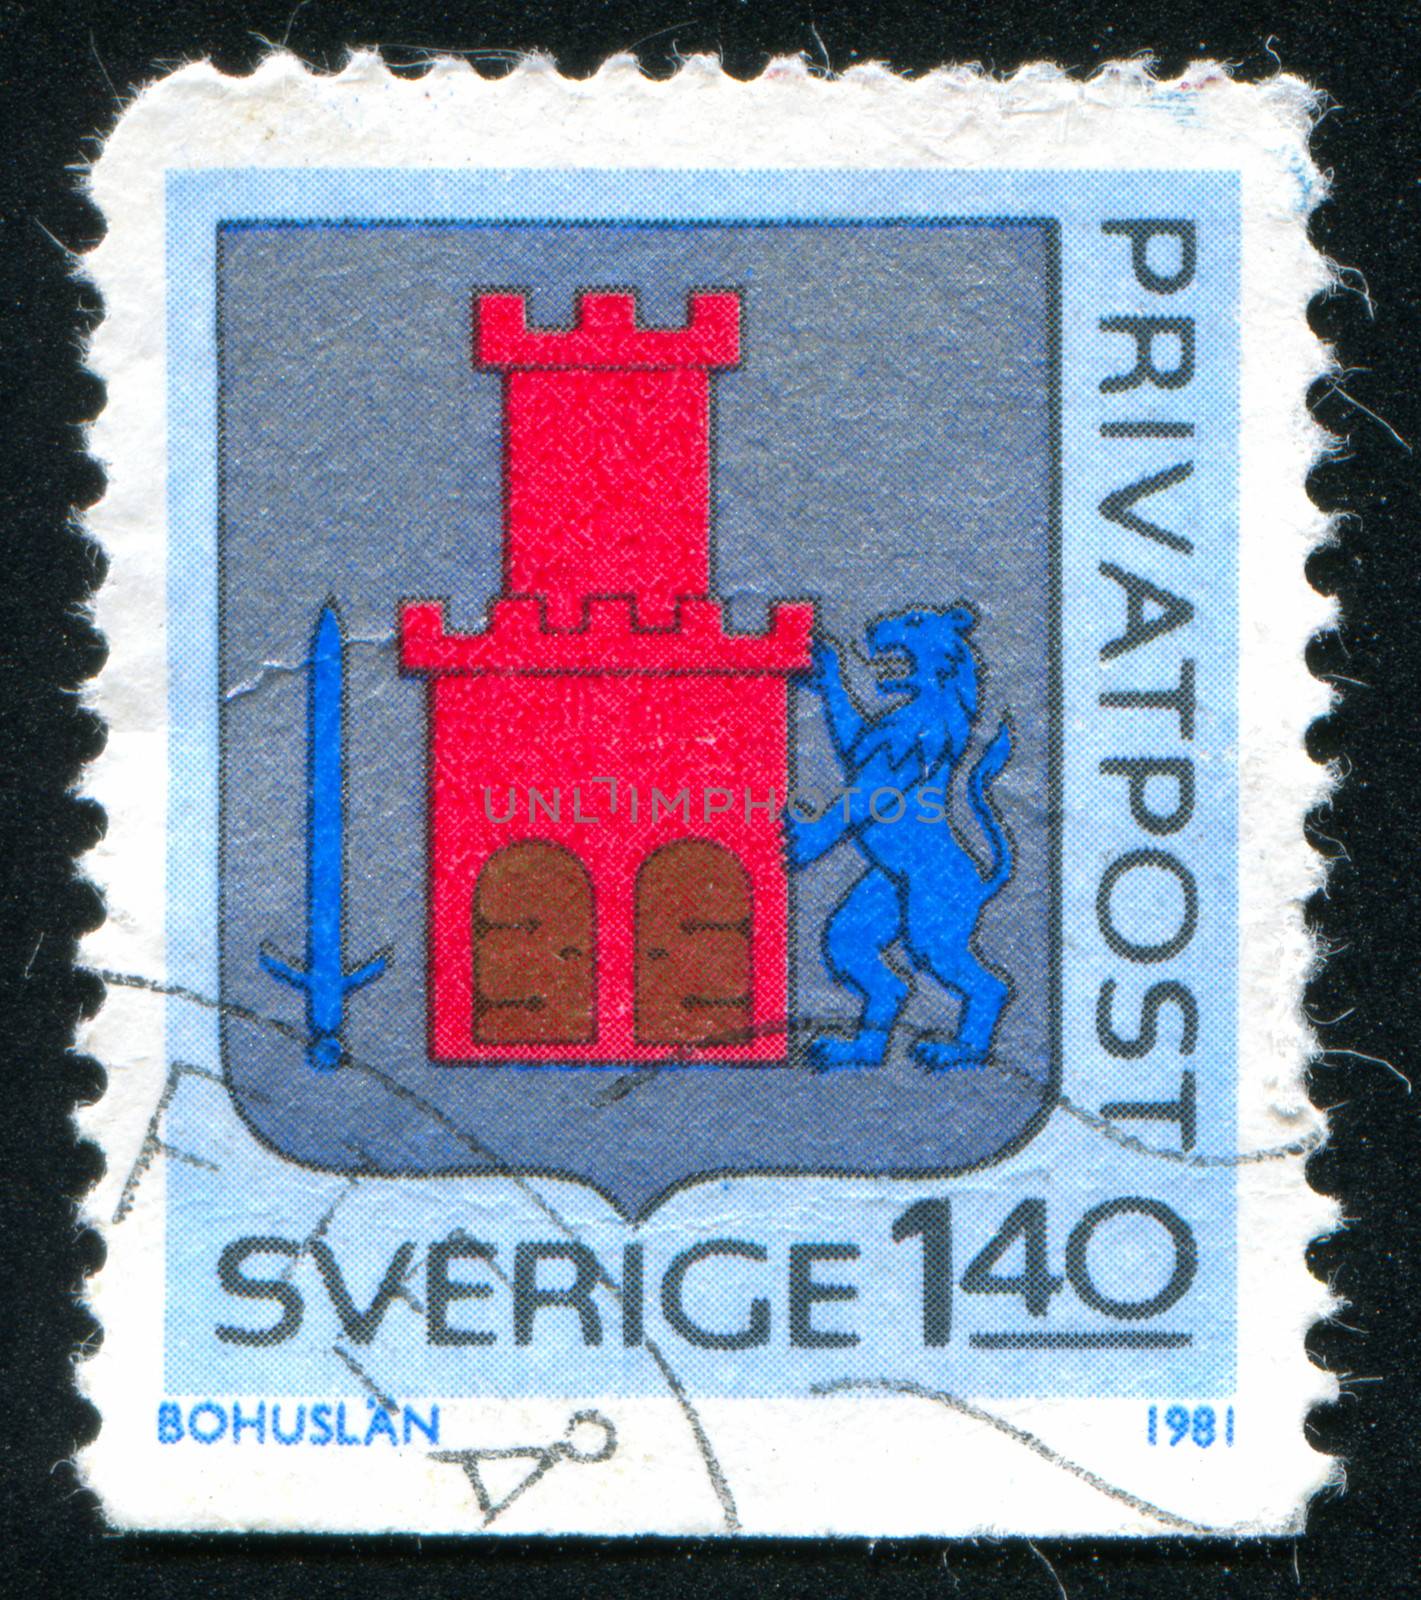 SWEDEN - CIRCA 1981: stamp printed by Sweden, shows Bohuslan Arms, circa 1981